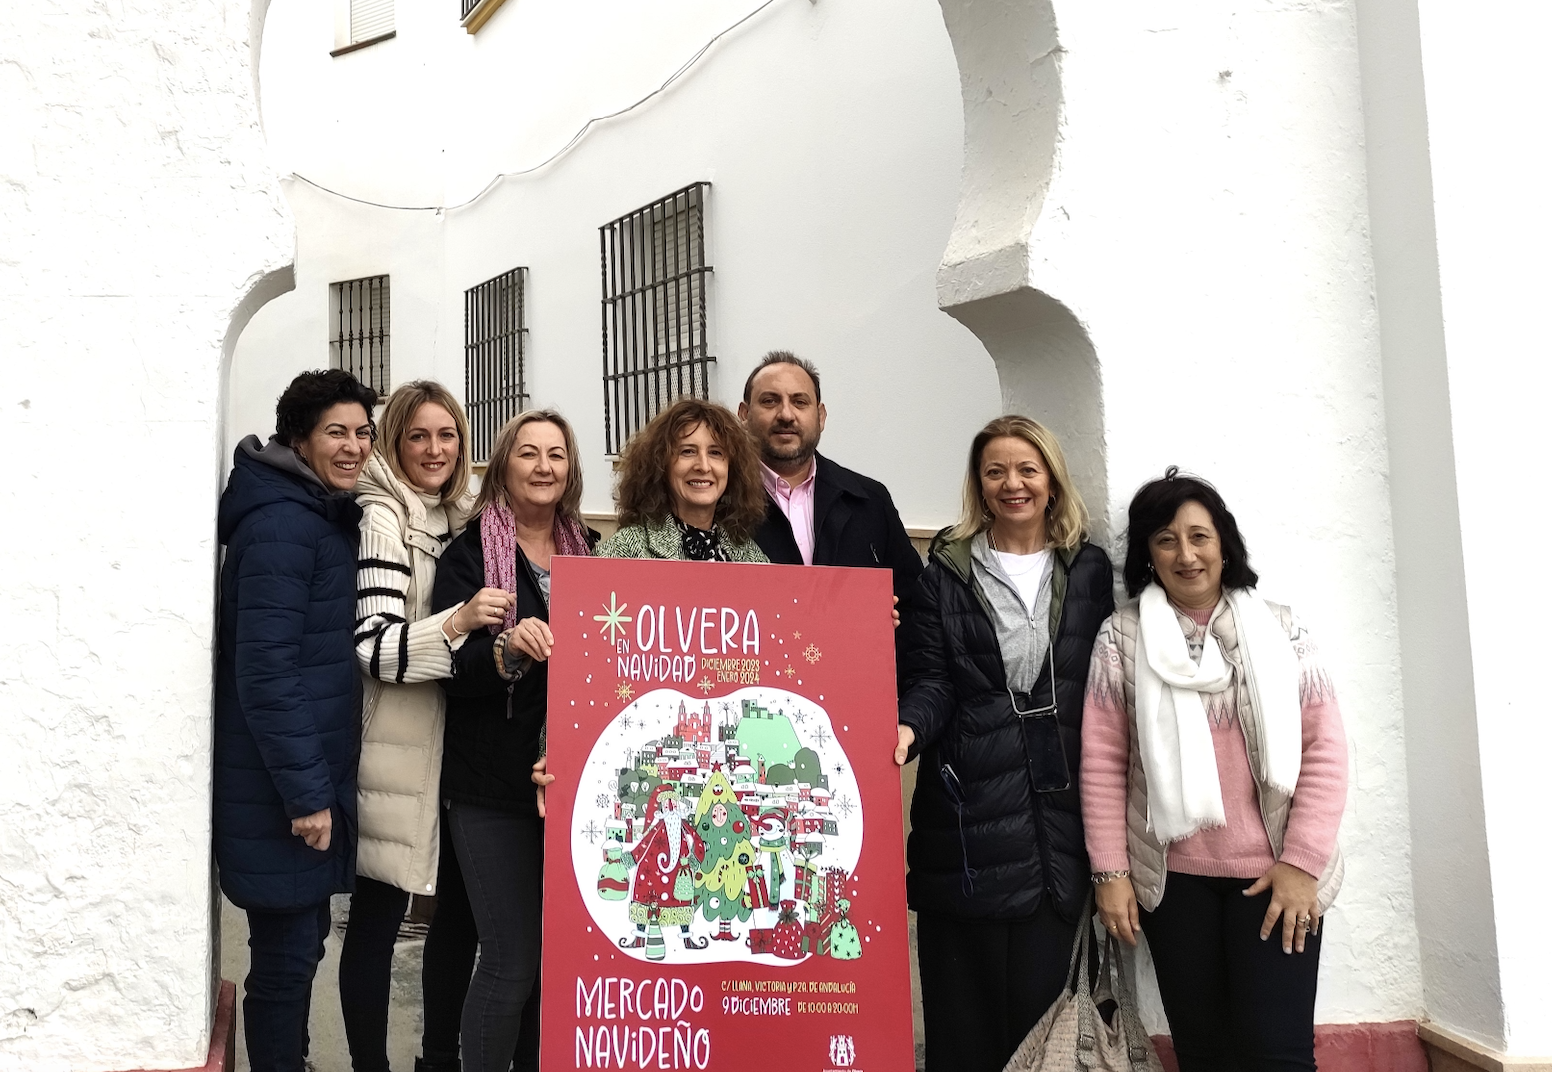 La alcaldesa y delegados junto a comerciantes con el cartel del Mercado Navideño.